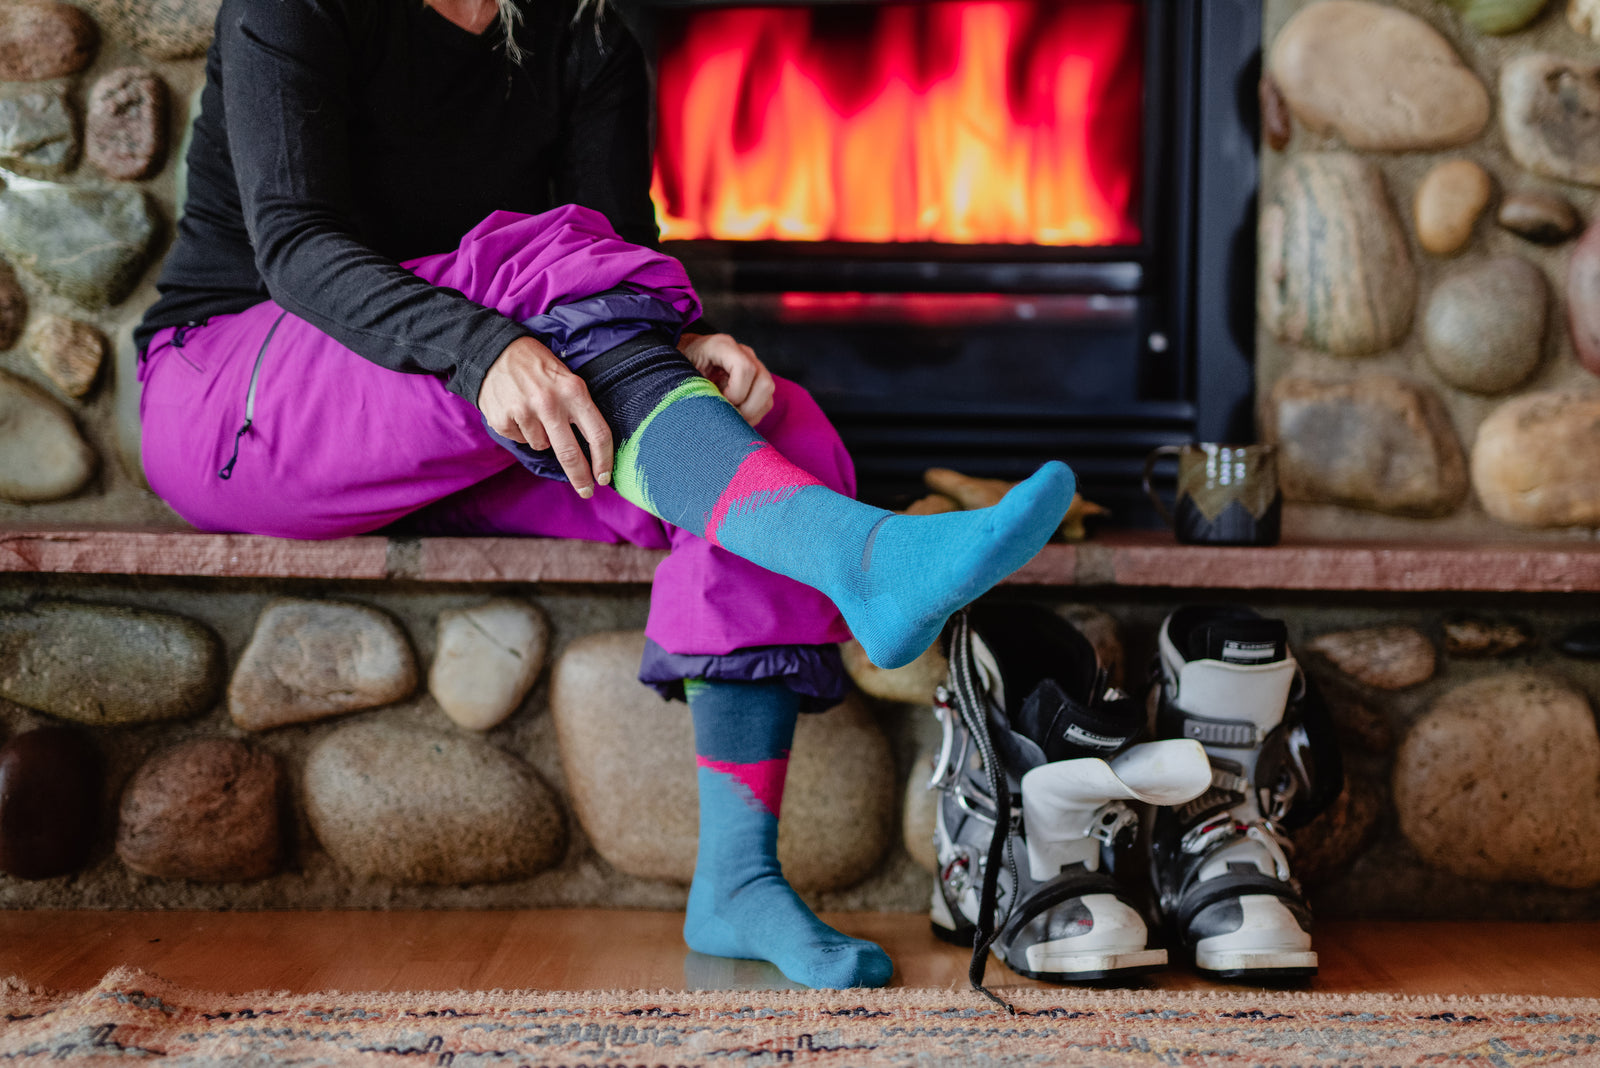 Buy Merino Wool Women's Base Layer Pants — 100% Organic Wool Midweight  Thermal Pants + Hiking Wool Socks (Medium, Black) at